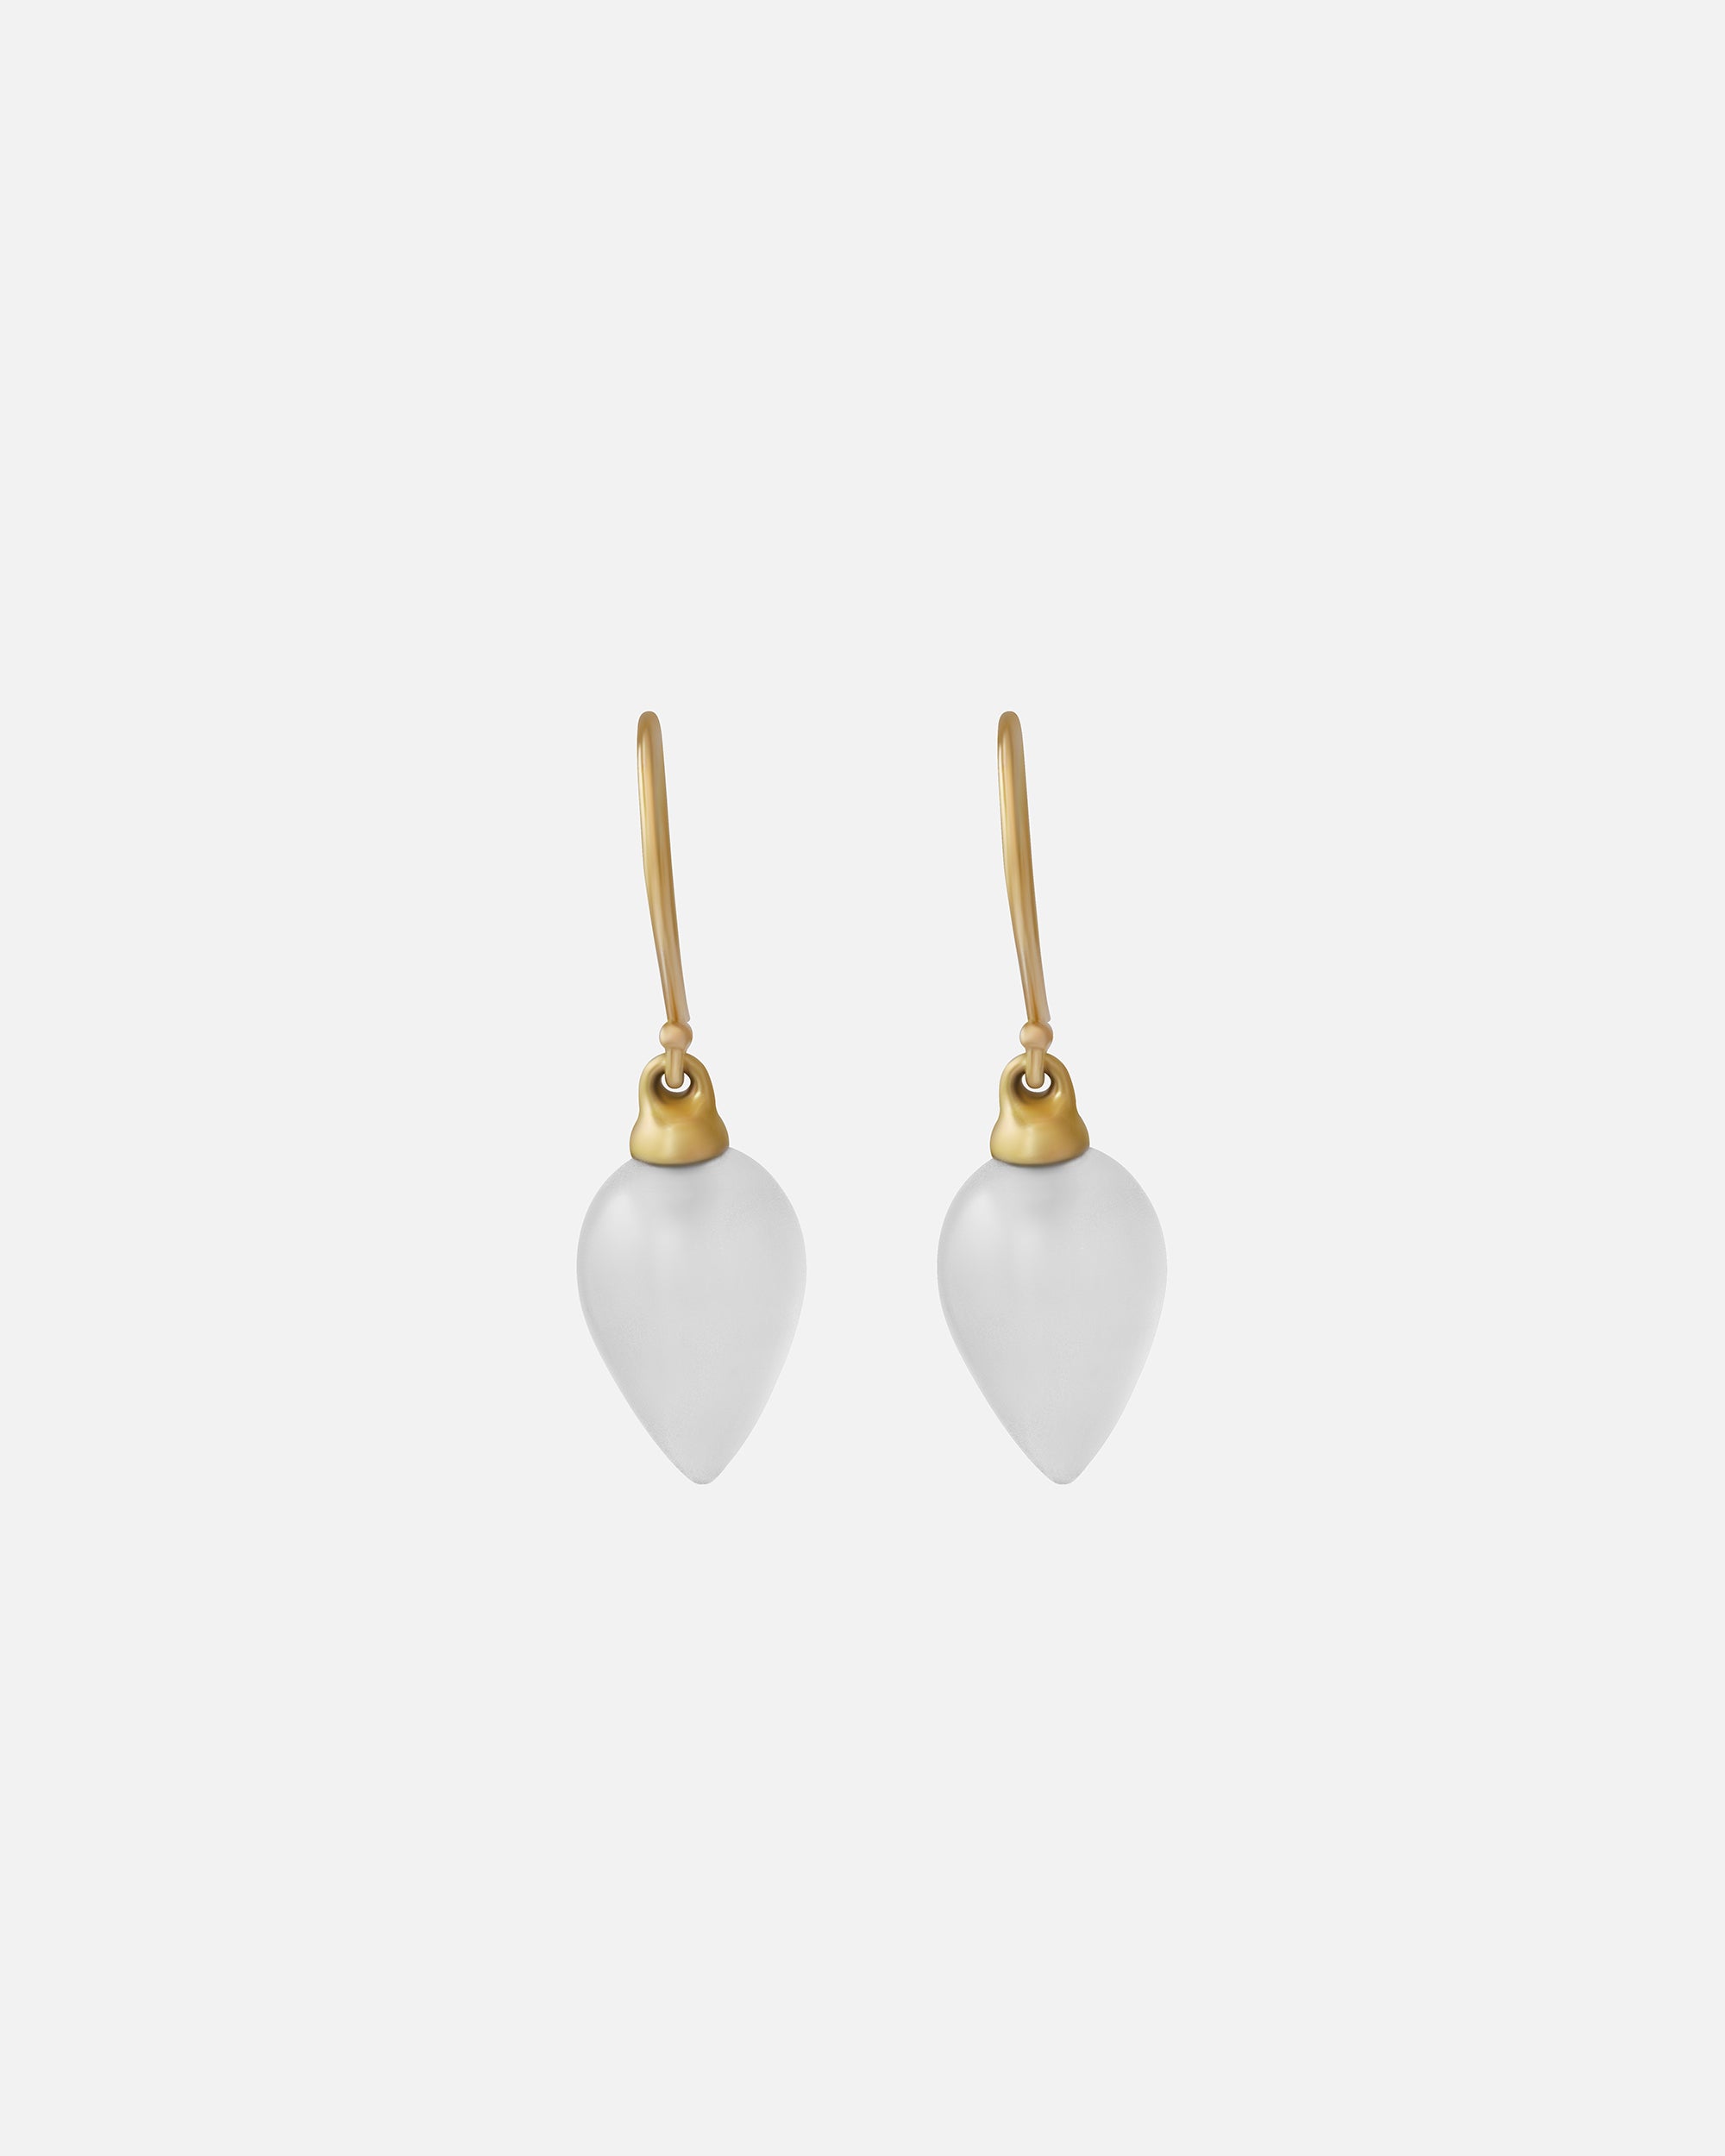 Chalcedony / Drop Earrings By Tricia Kirkland in earrings Category